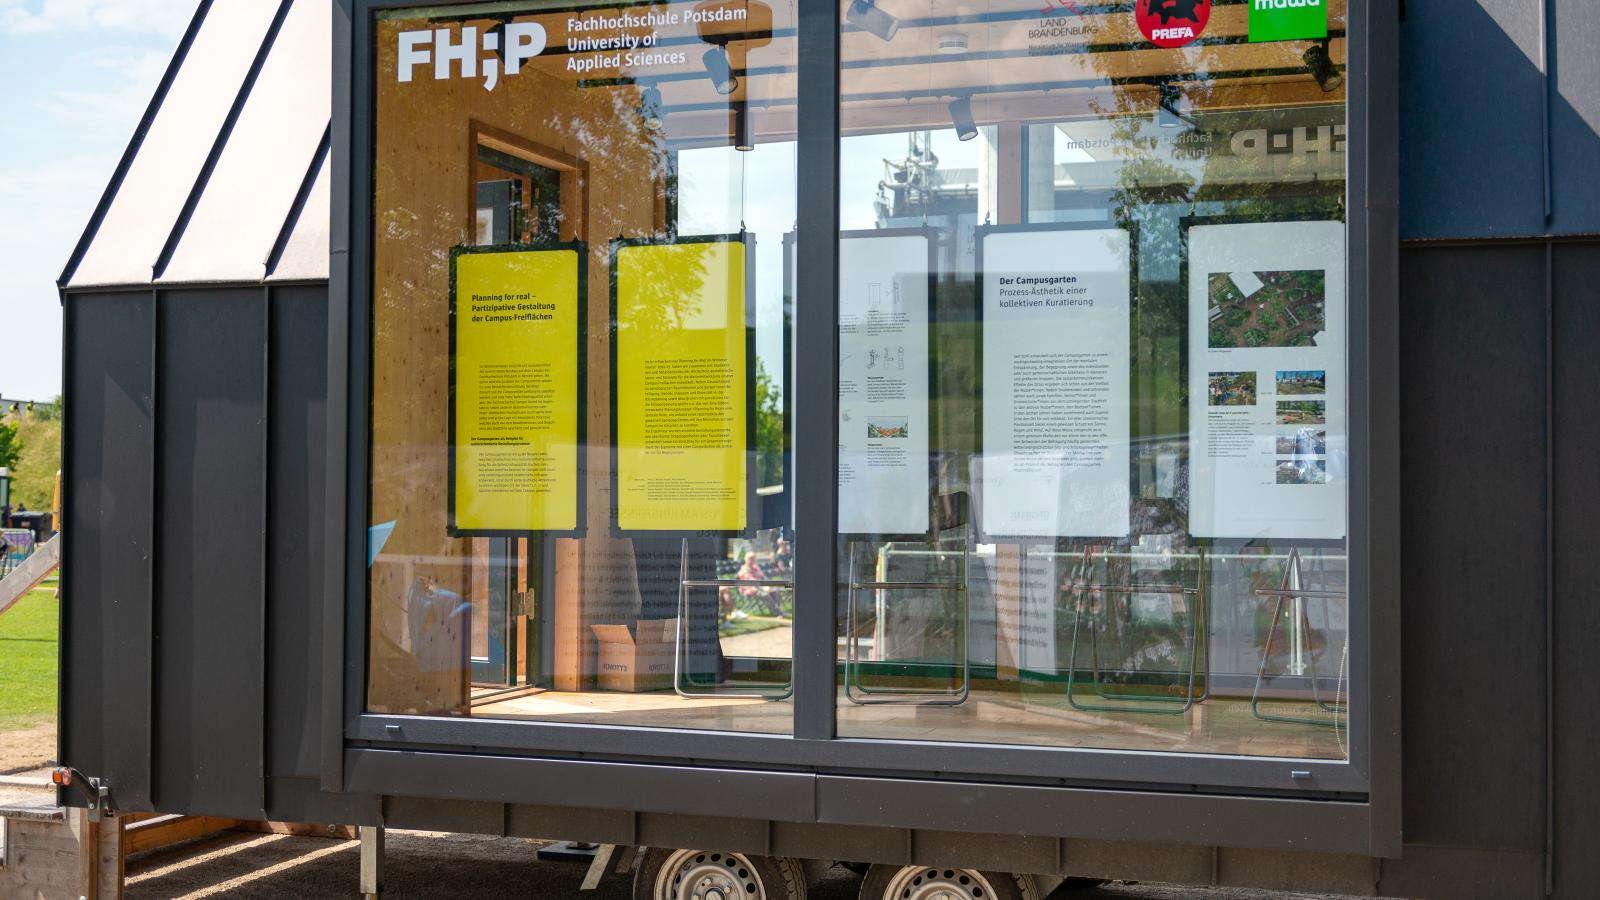 Das FHP Mobil präsentiert das Projekt "Planning for real" bei DREISSIG!, dem Fest zum Jubiläum des dreißigjährigen Bestehens des Stadtteils Potsdam Bornstedt im Volkspark Potsdam